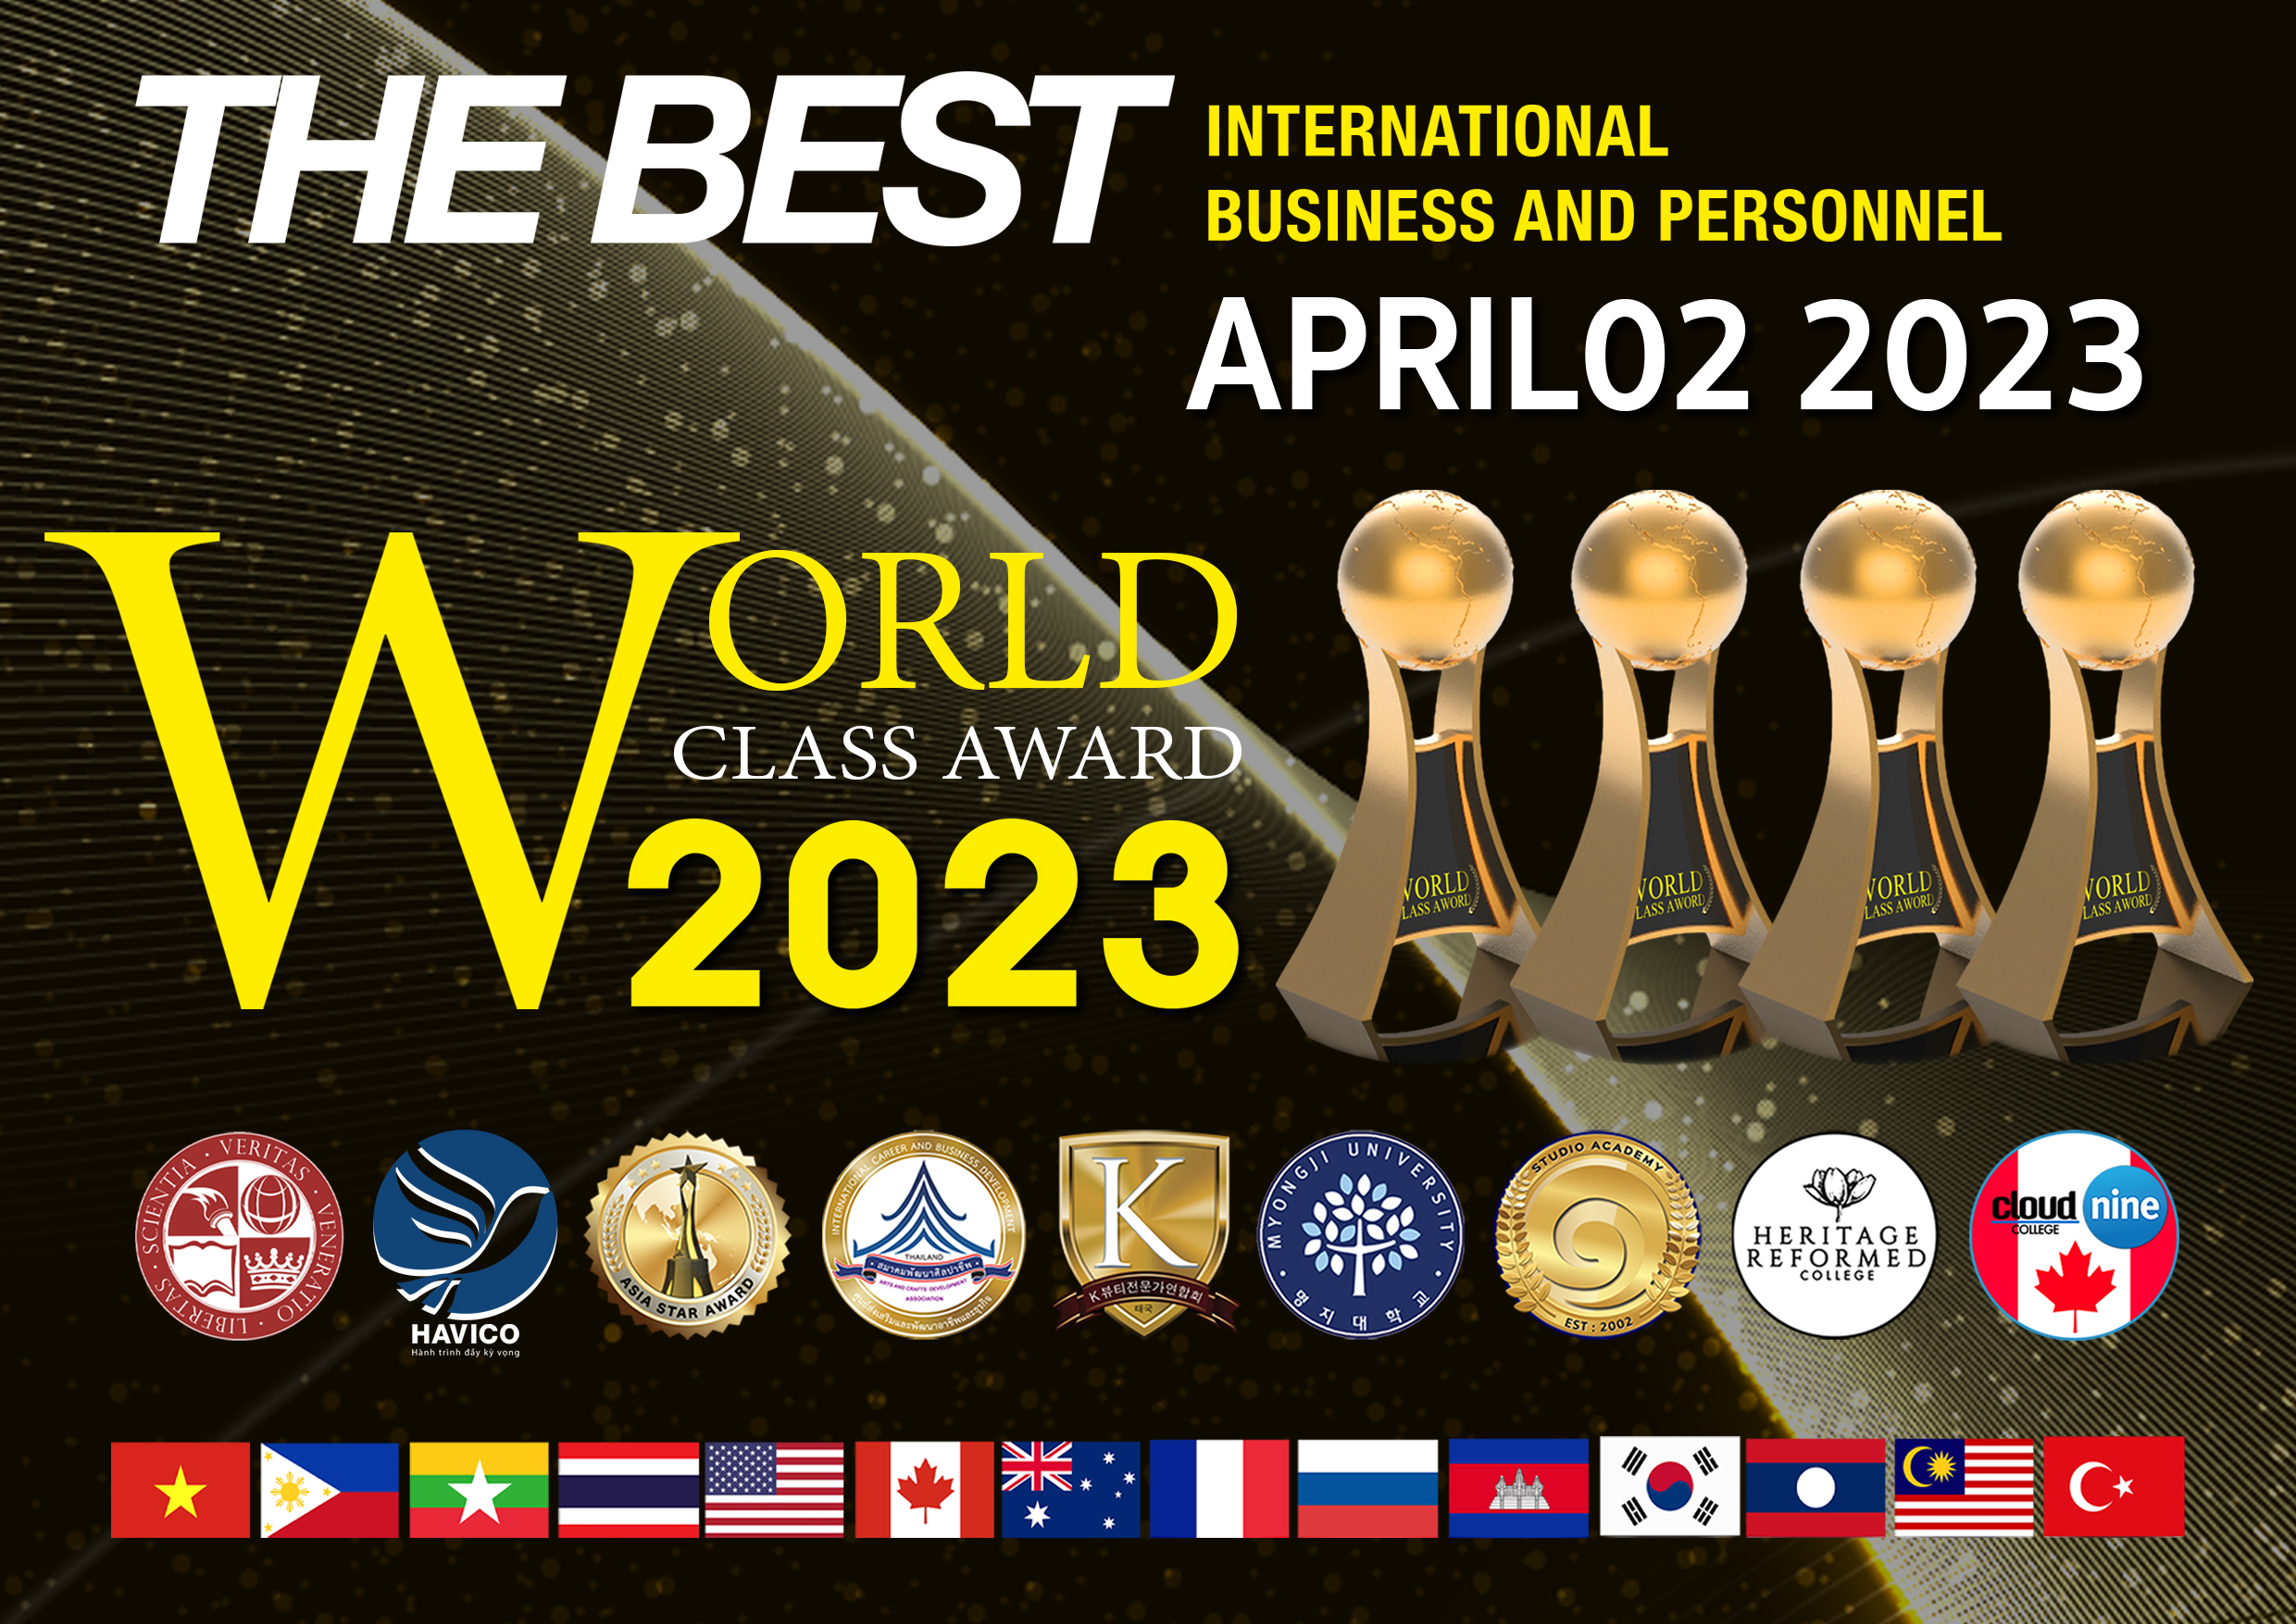 World Class Award 2023